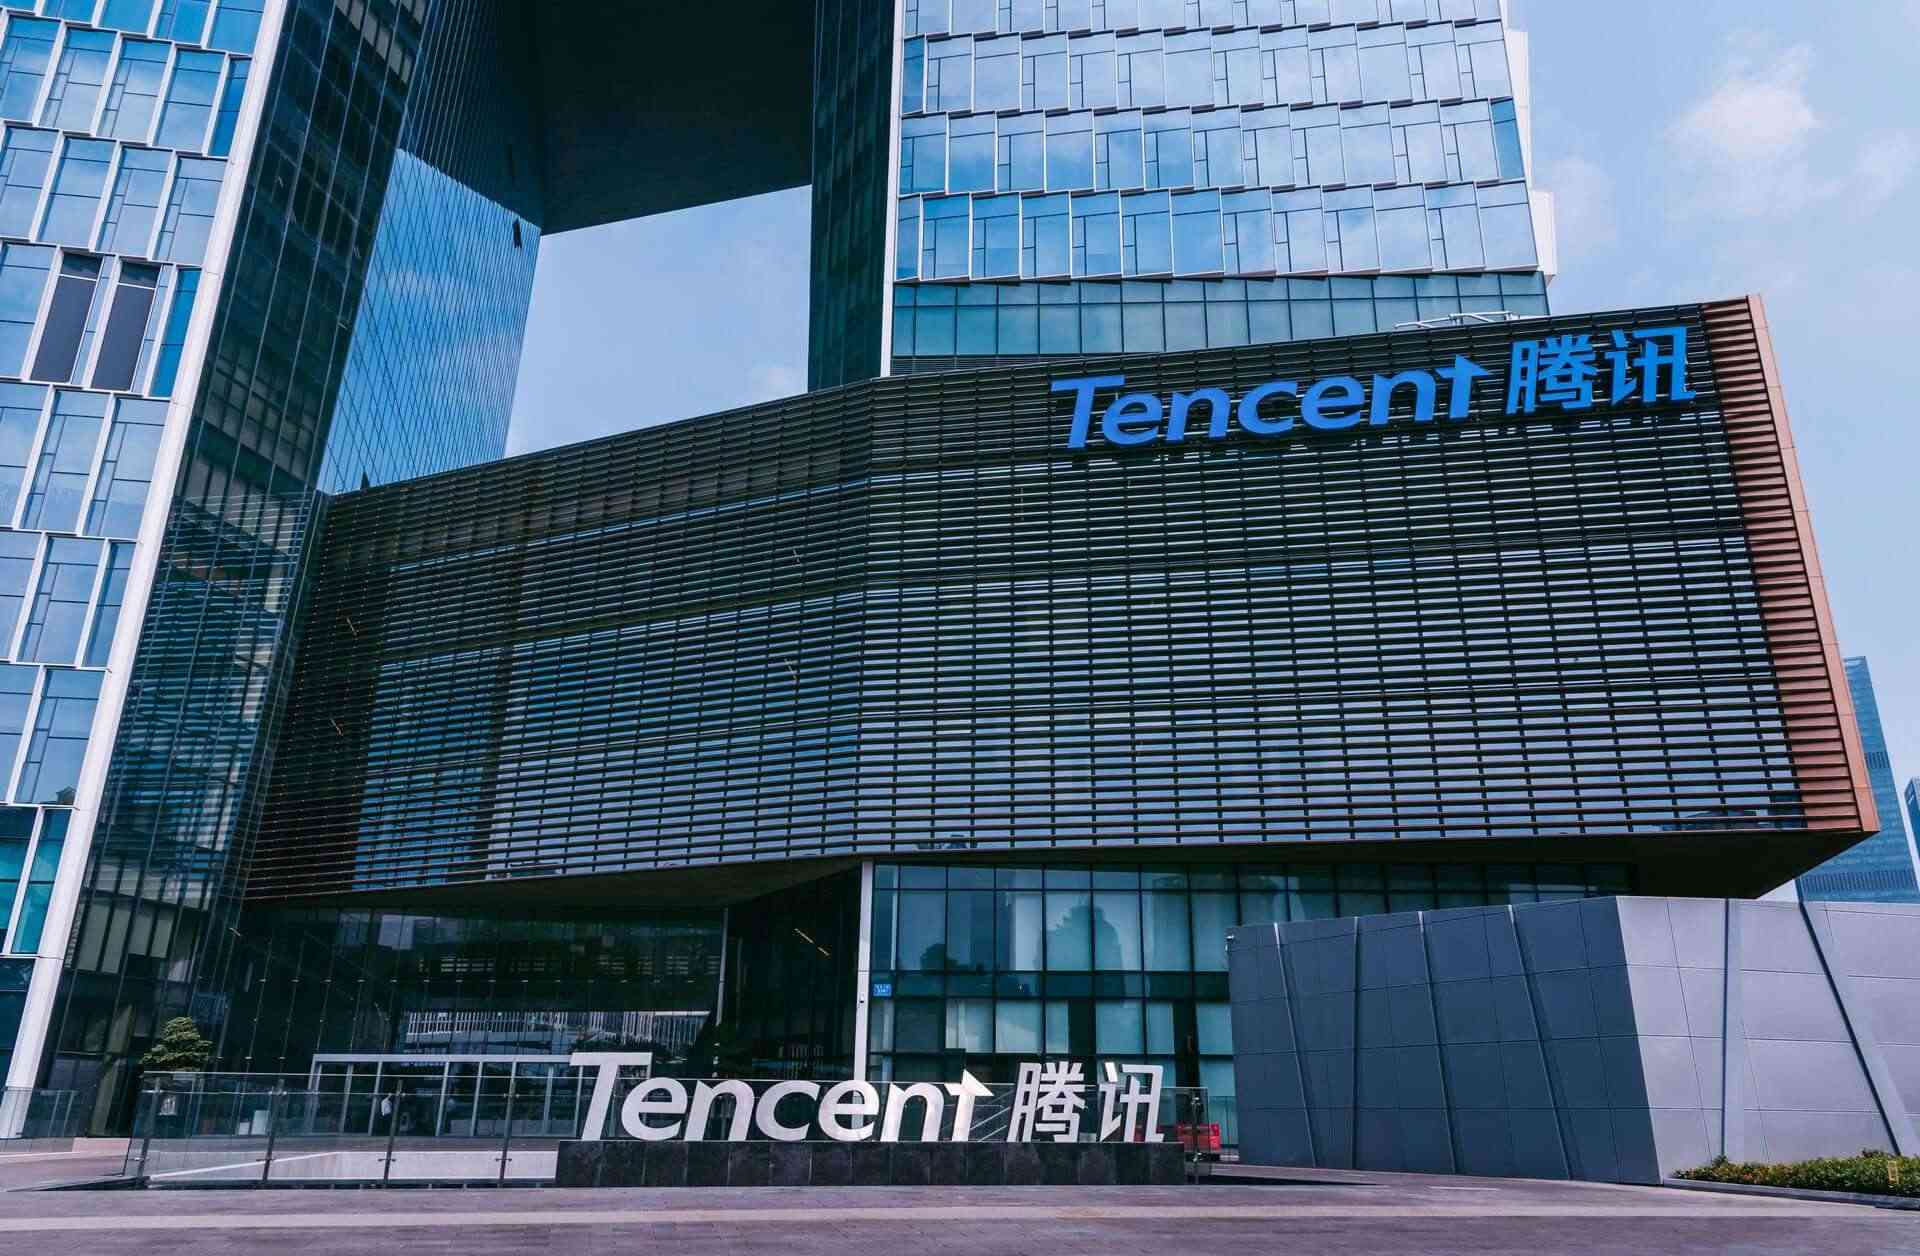 Return to Empire của Tencent được quảng bá trên các nền tảng của ByteDance